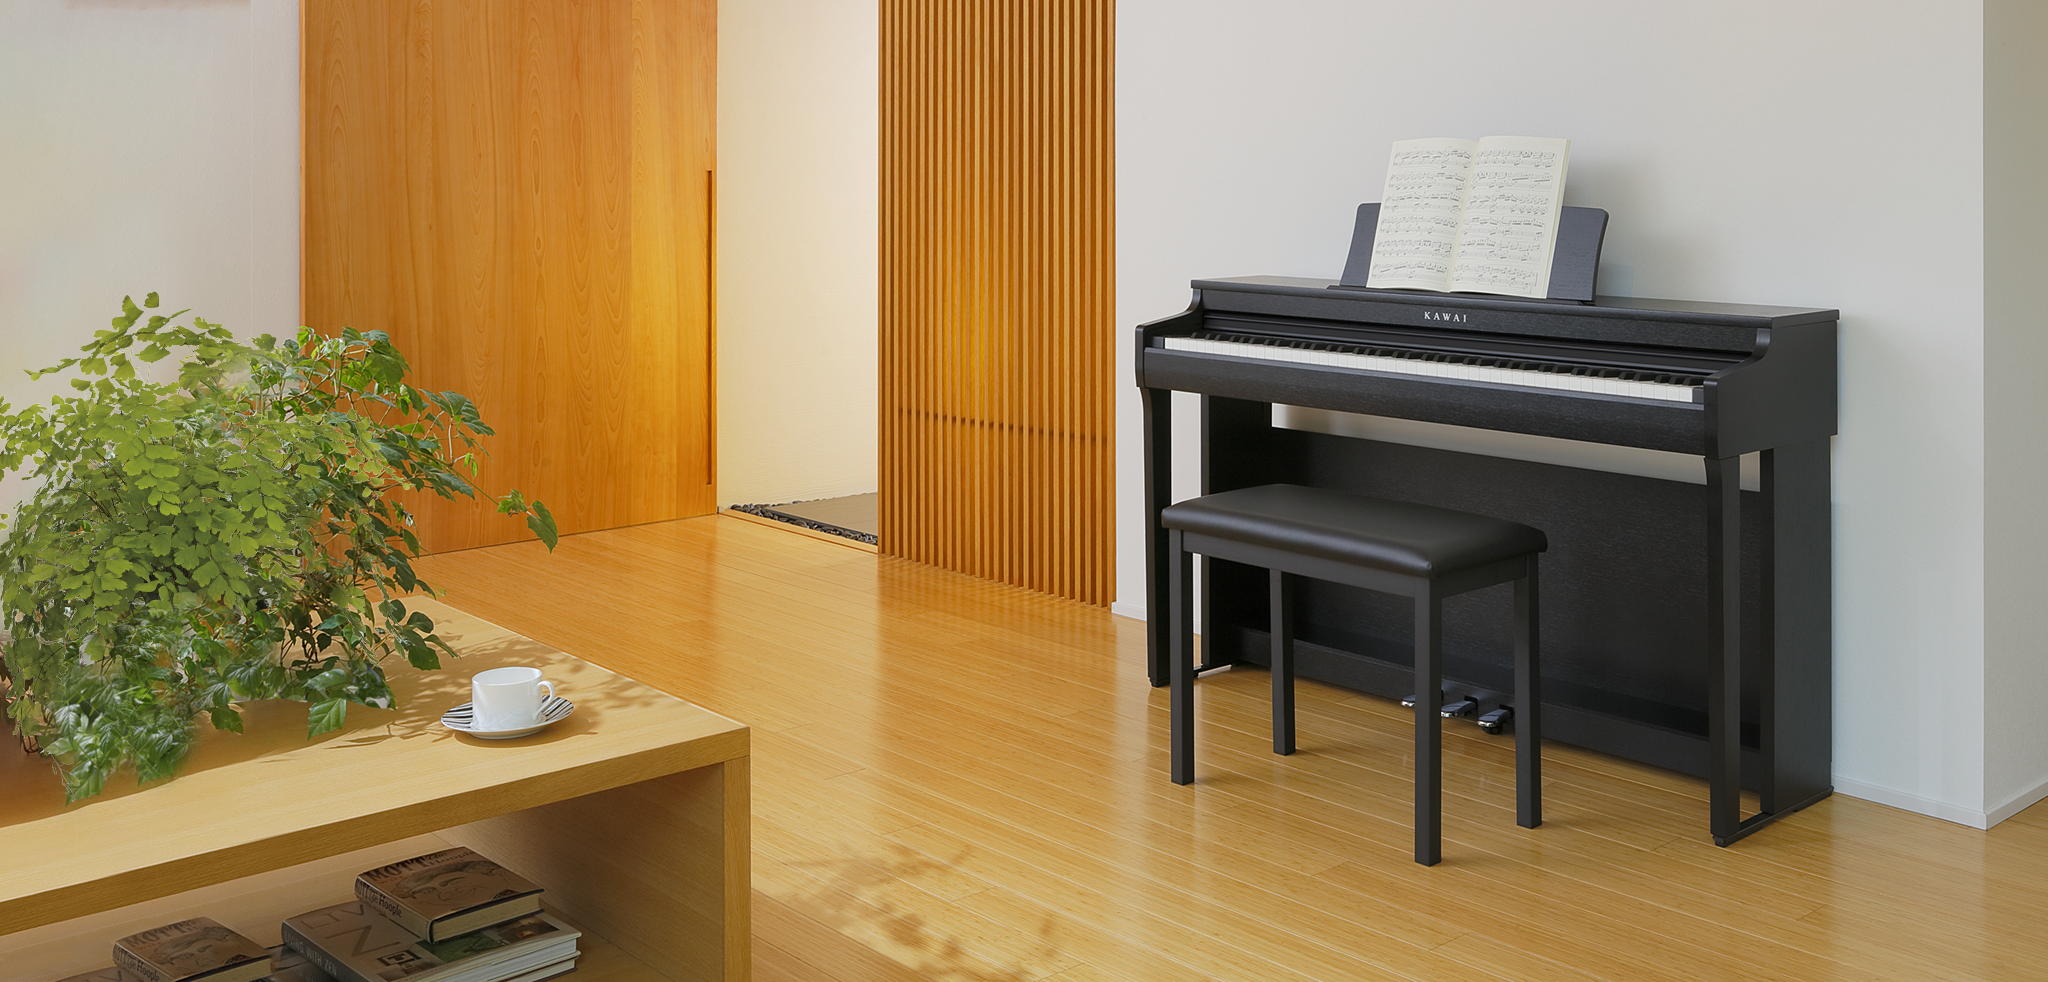 Kawai CN29｜Digital Pianos｜Products｜Kawai Musical Instruments 